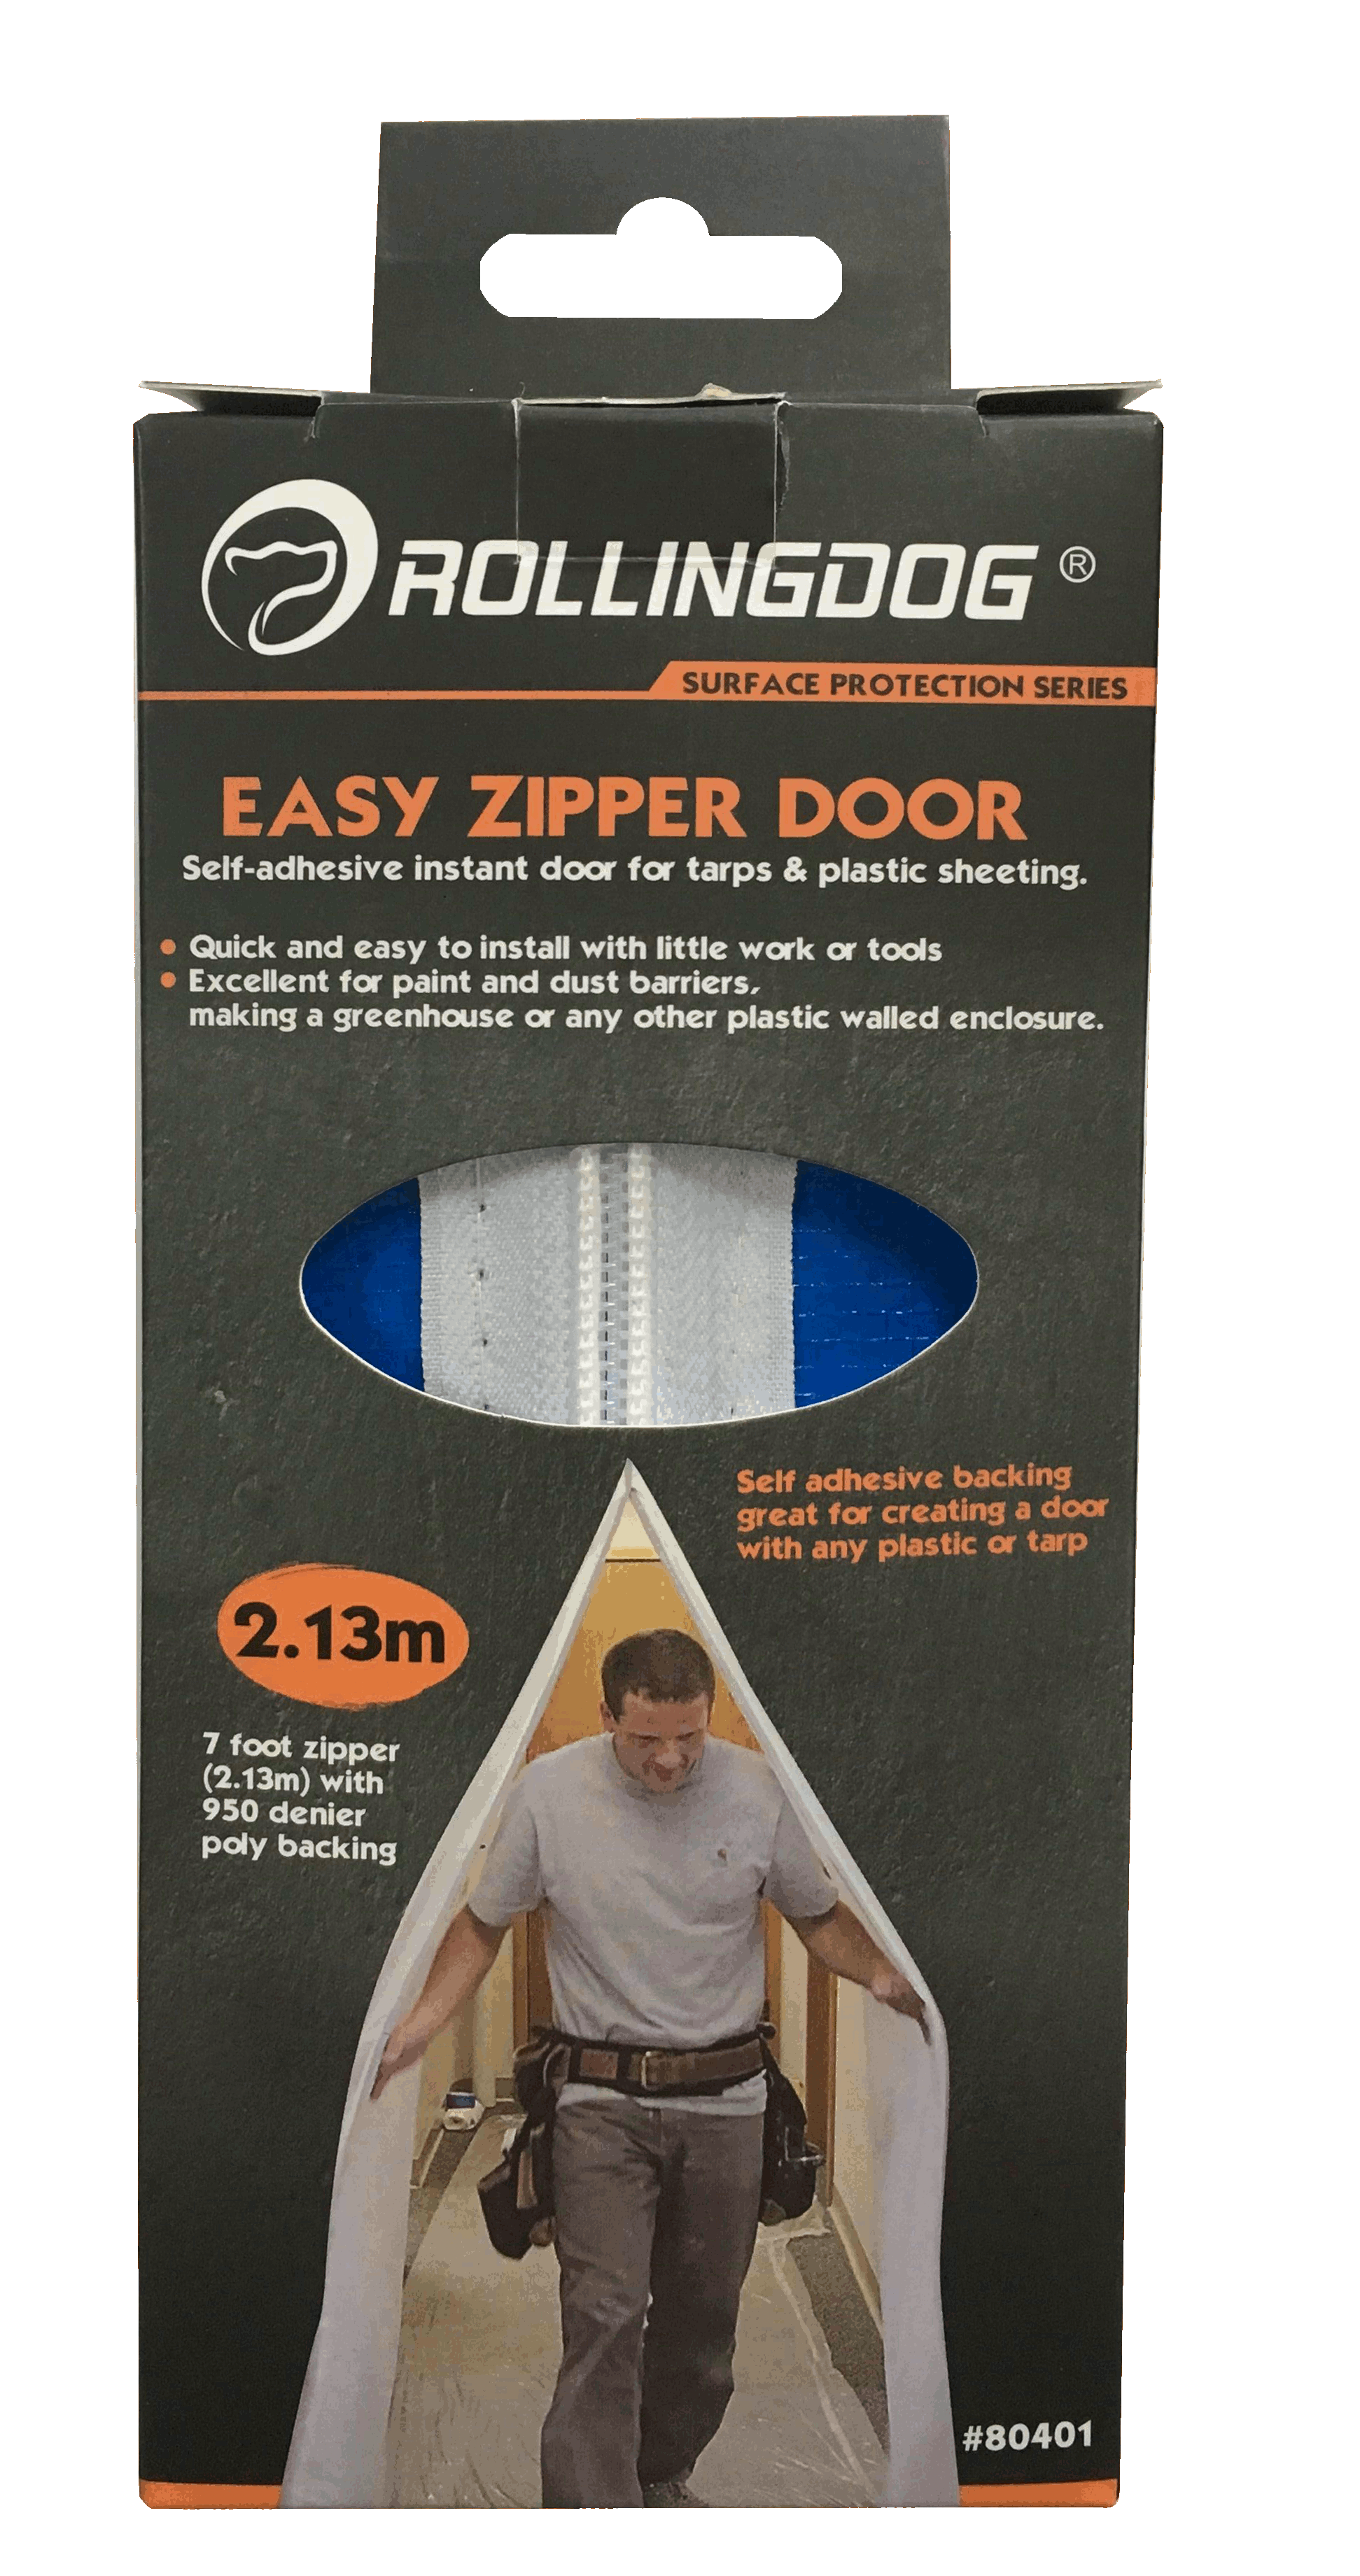 Easy Zipper Door                                                                                                                                                                                        